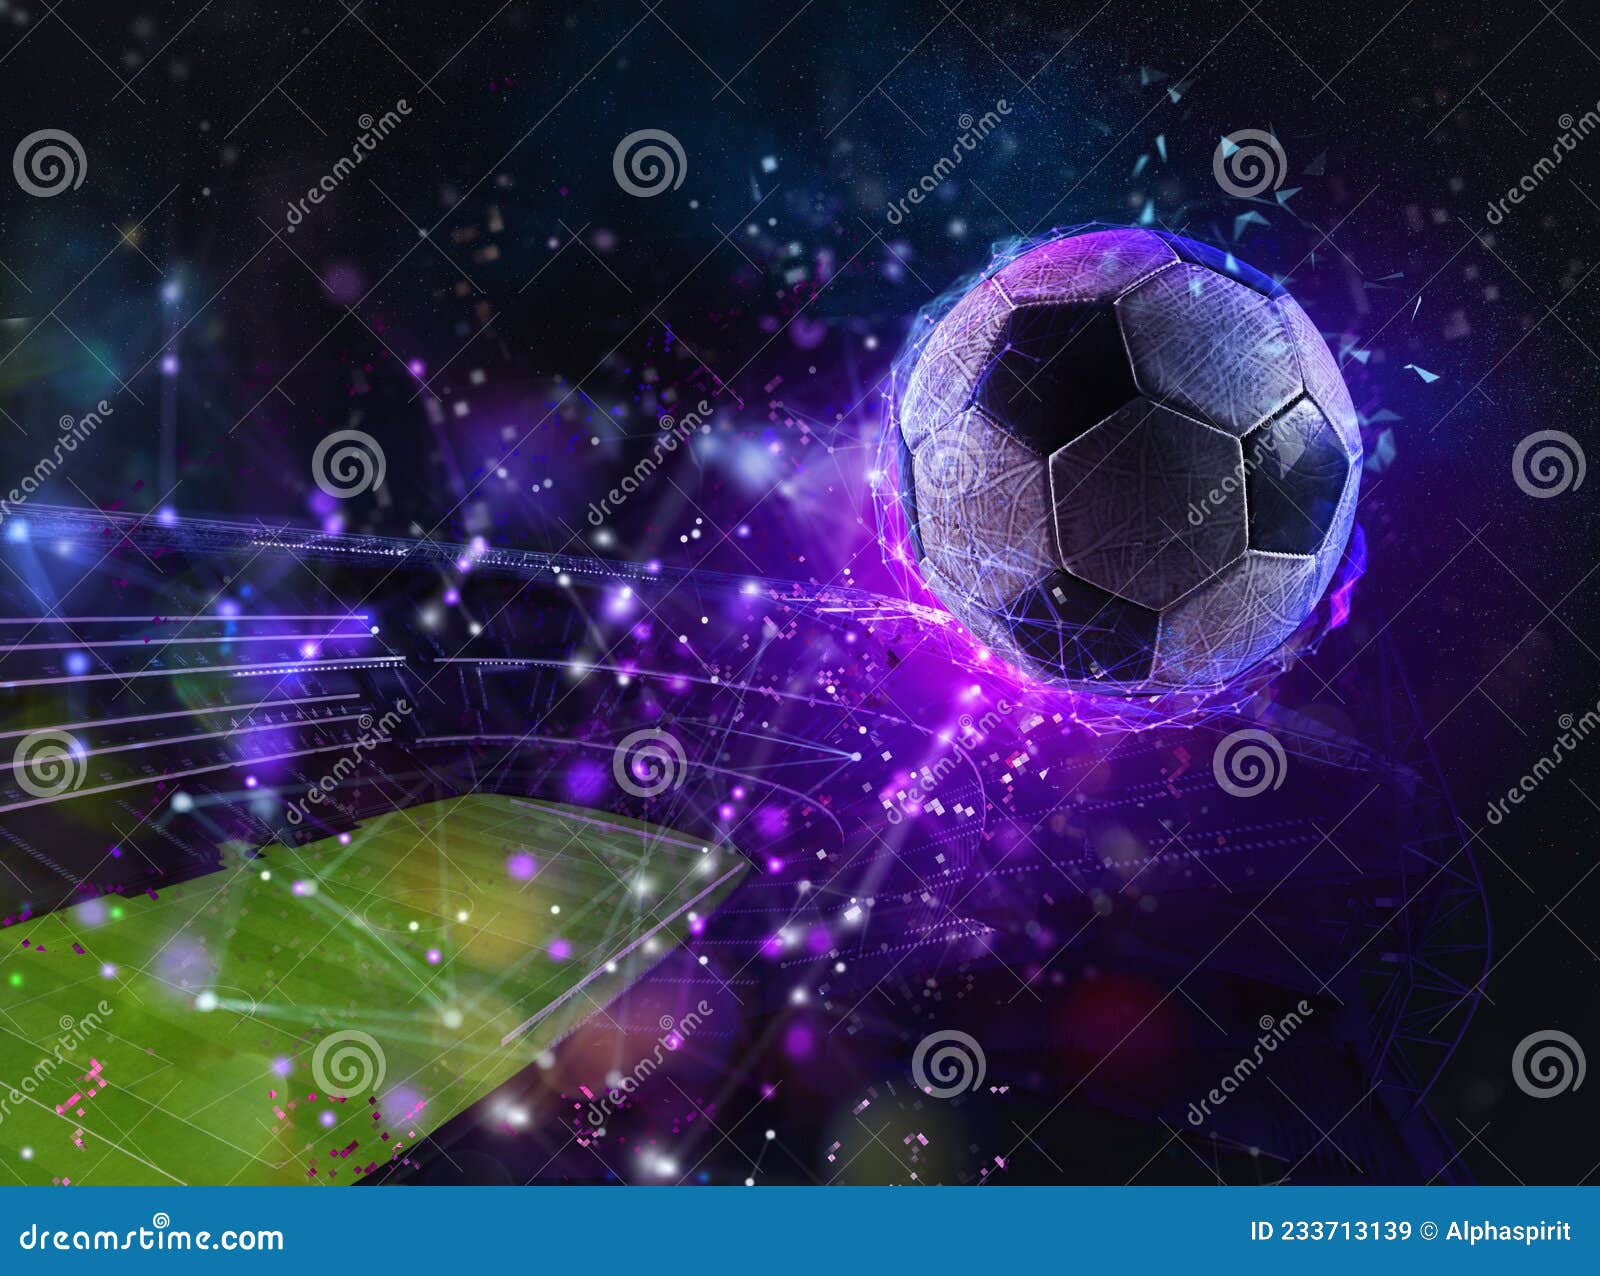 Internet De Futebol Streaming Online E Apostar Online Imagem de Stock -  Imagem de fluir, objetivo: 233713139